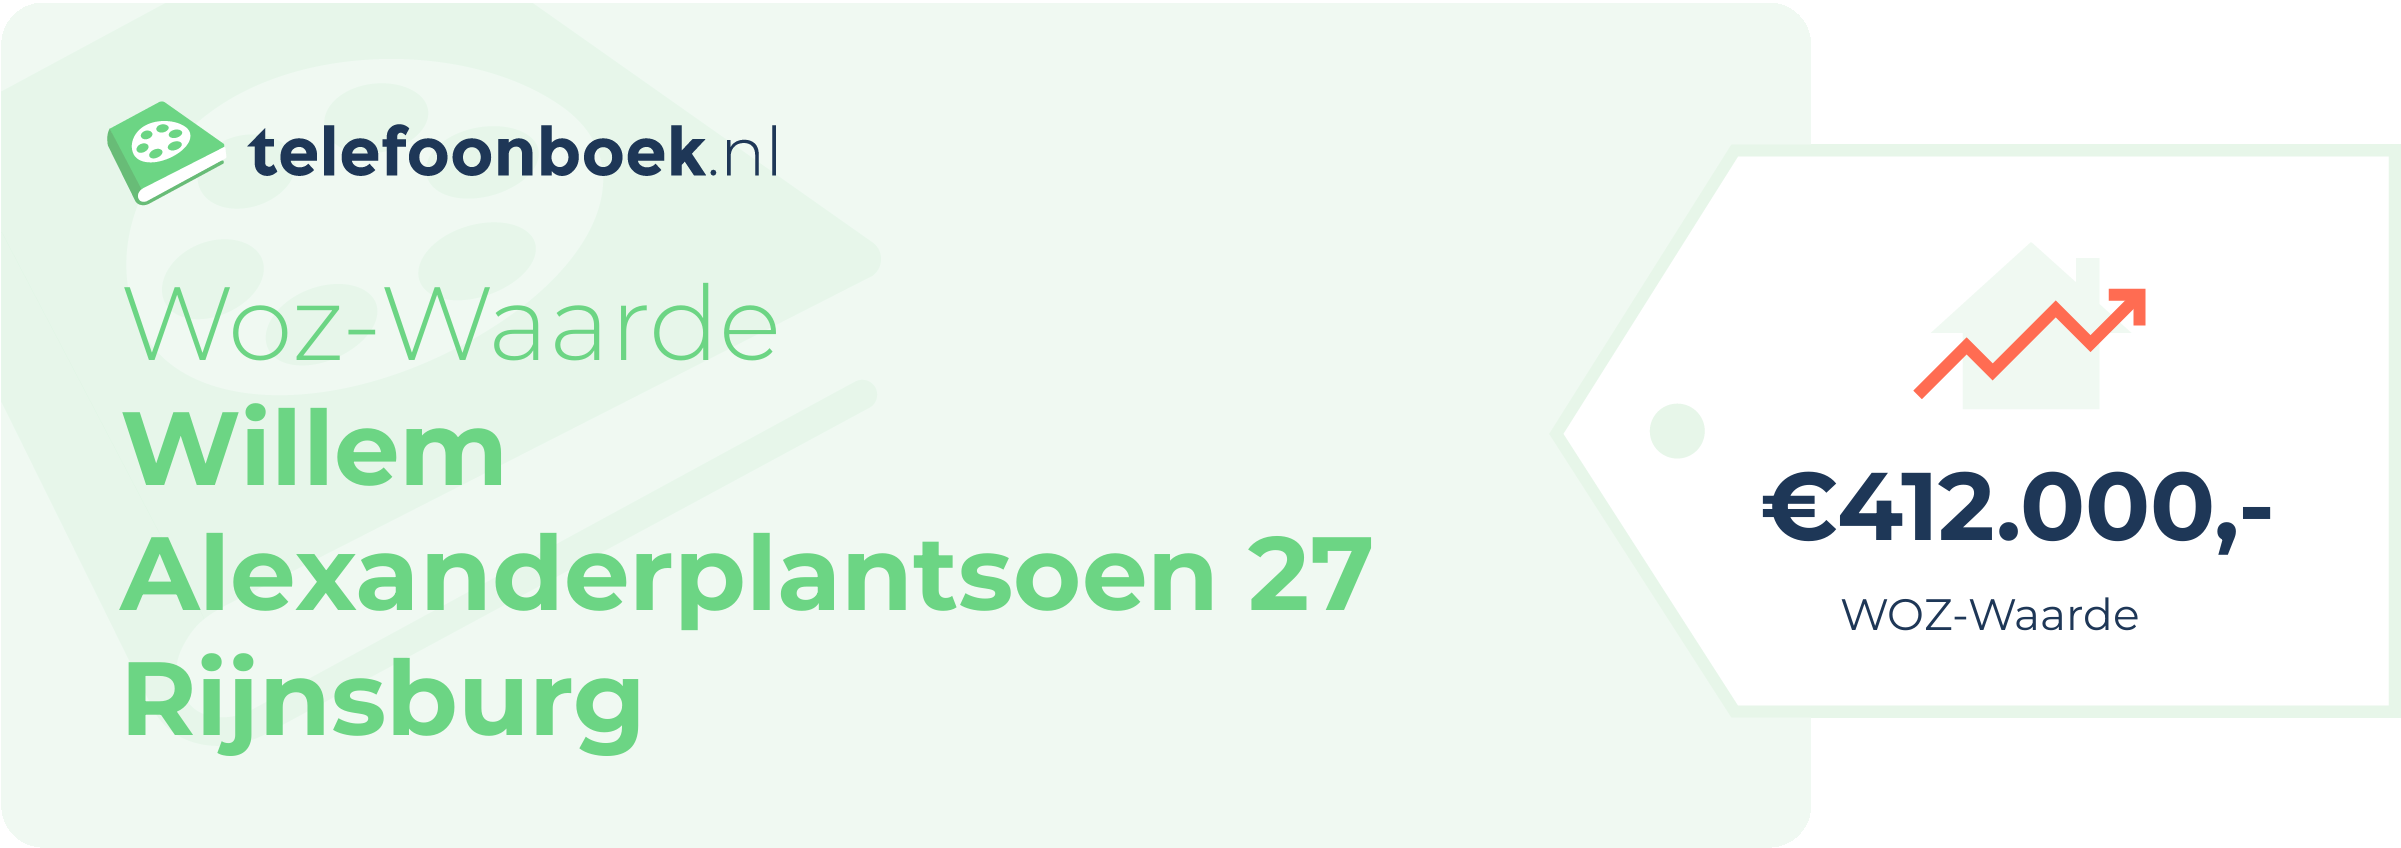 WOZ-waarde Willem Alexanderplantsoen 27 Rijnsburg